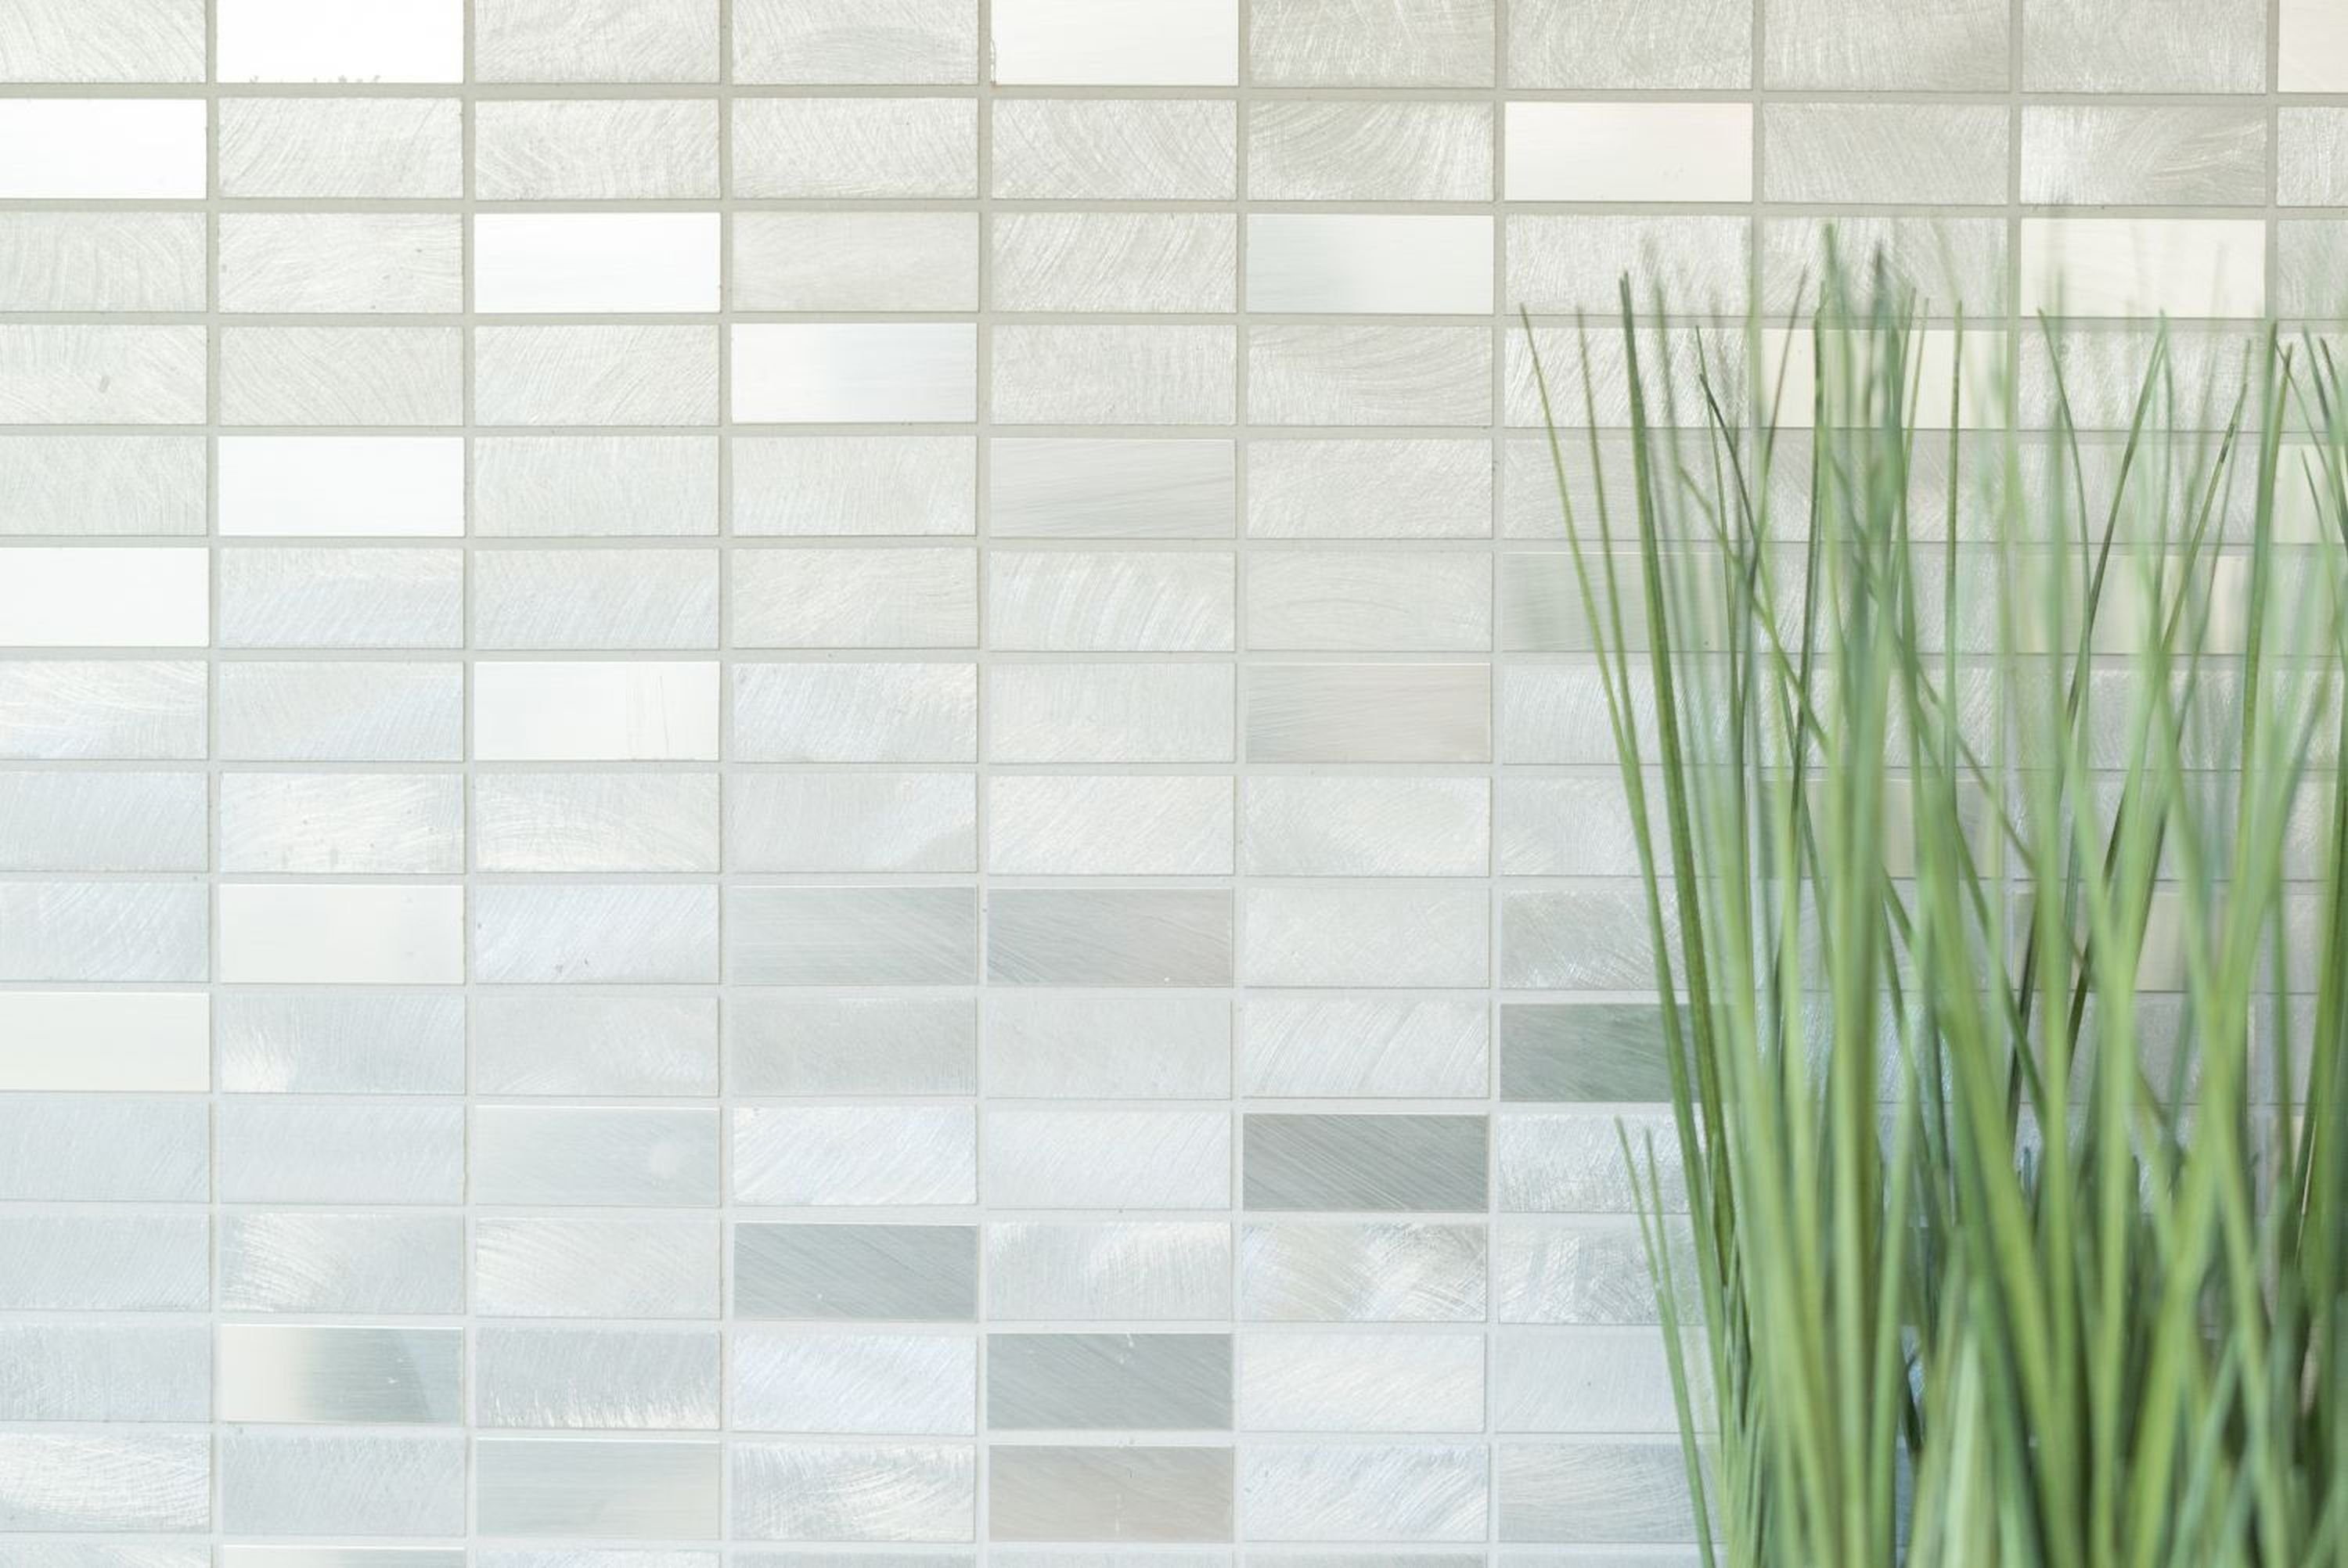 gebürstet Mosani Mosaik Küche poliert Mosaikfliesen Aluminium Fliese silber